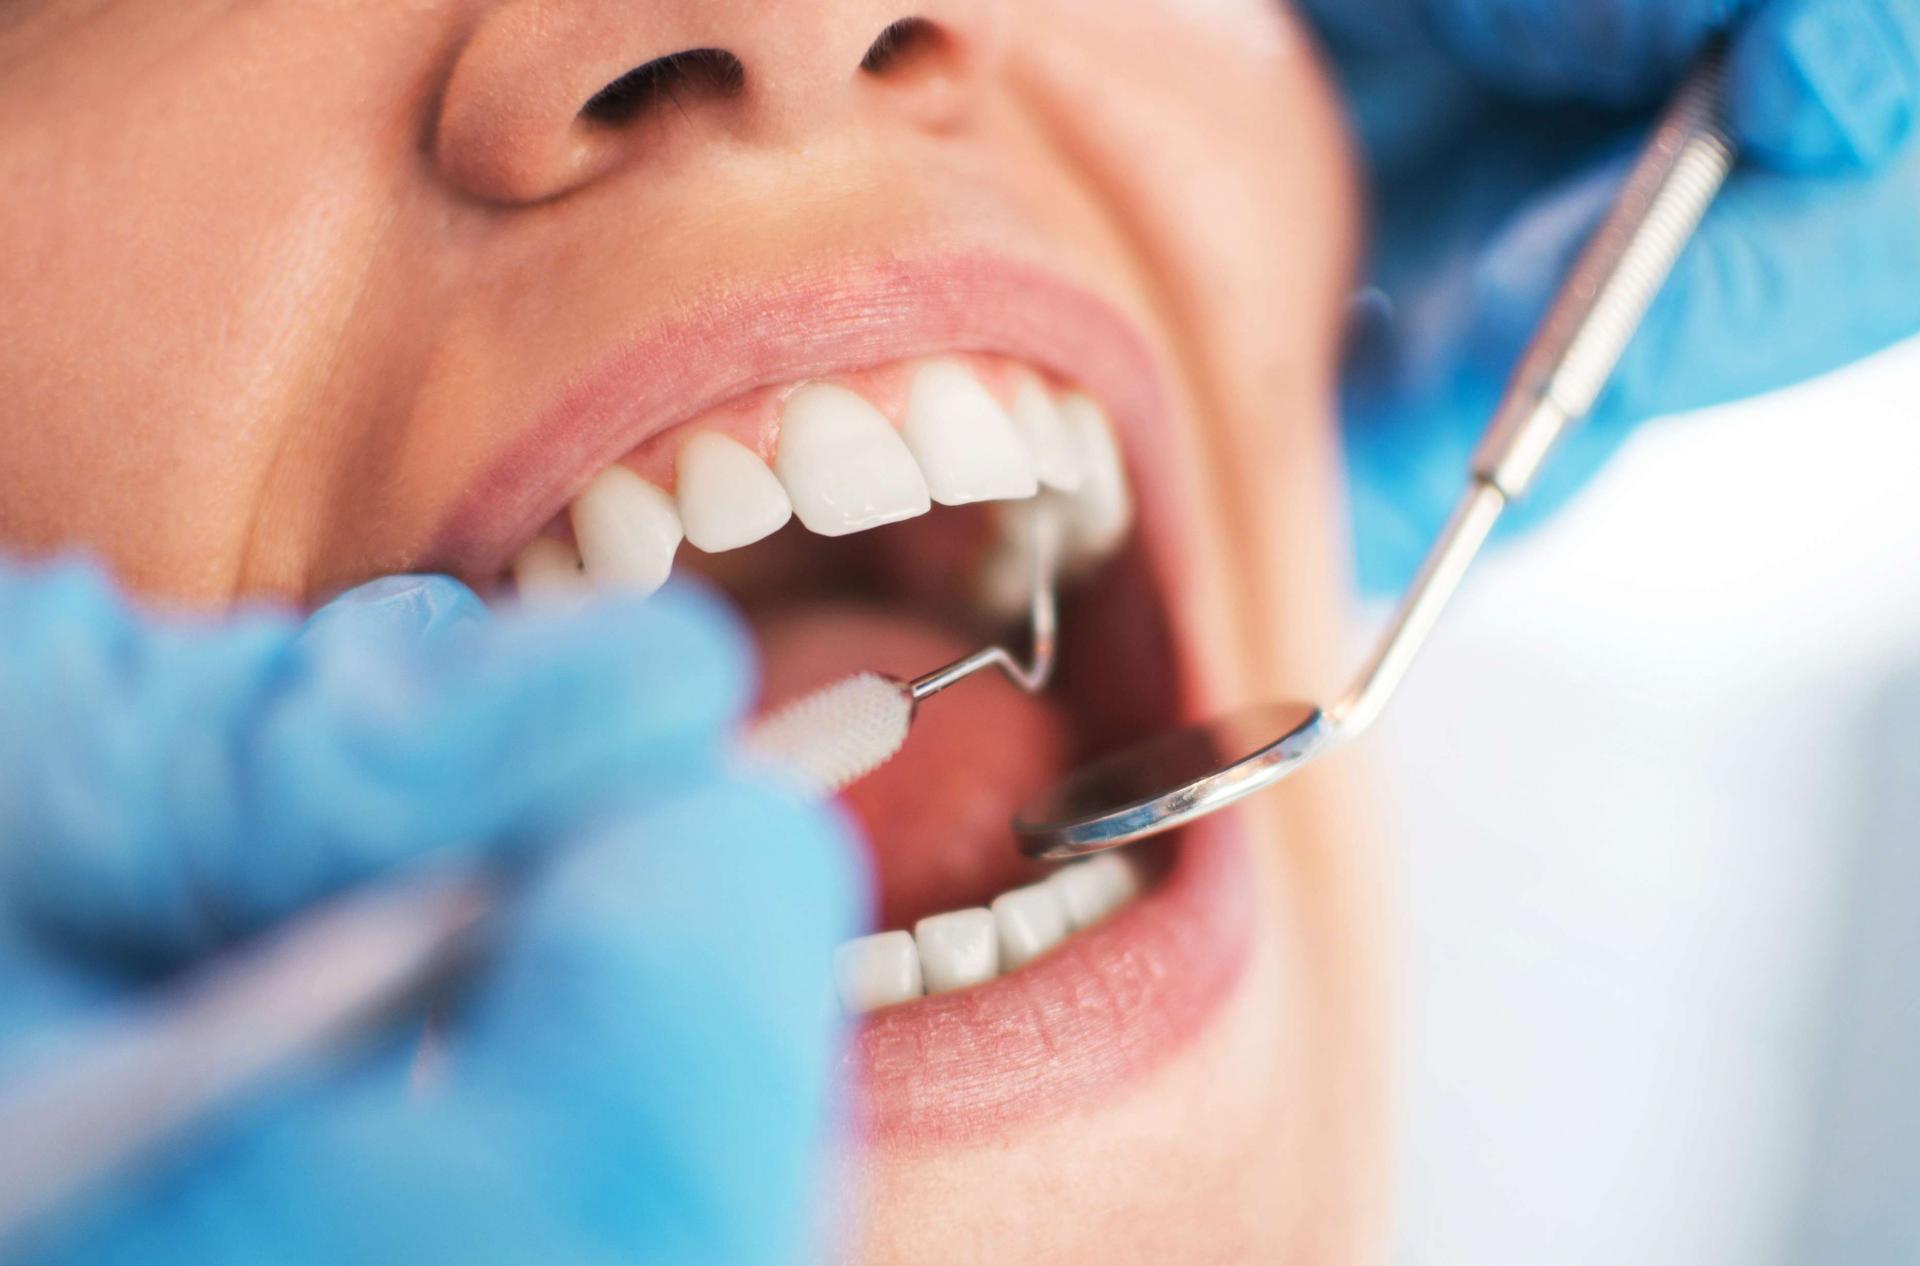 Teleconsultoria Odontológica da UNIFAL-MG auxilia profissionais da região no diagnóstico precoce de lesões na boca.